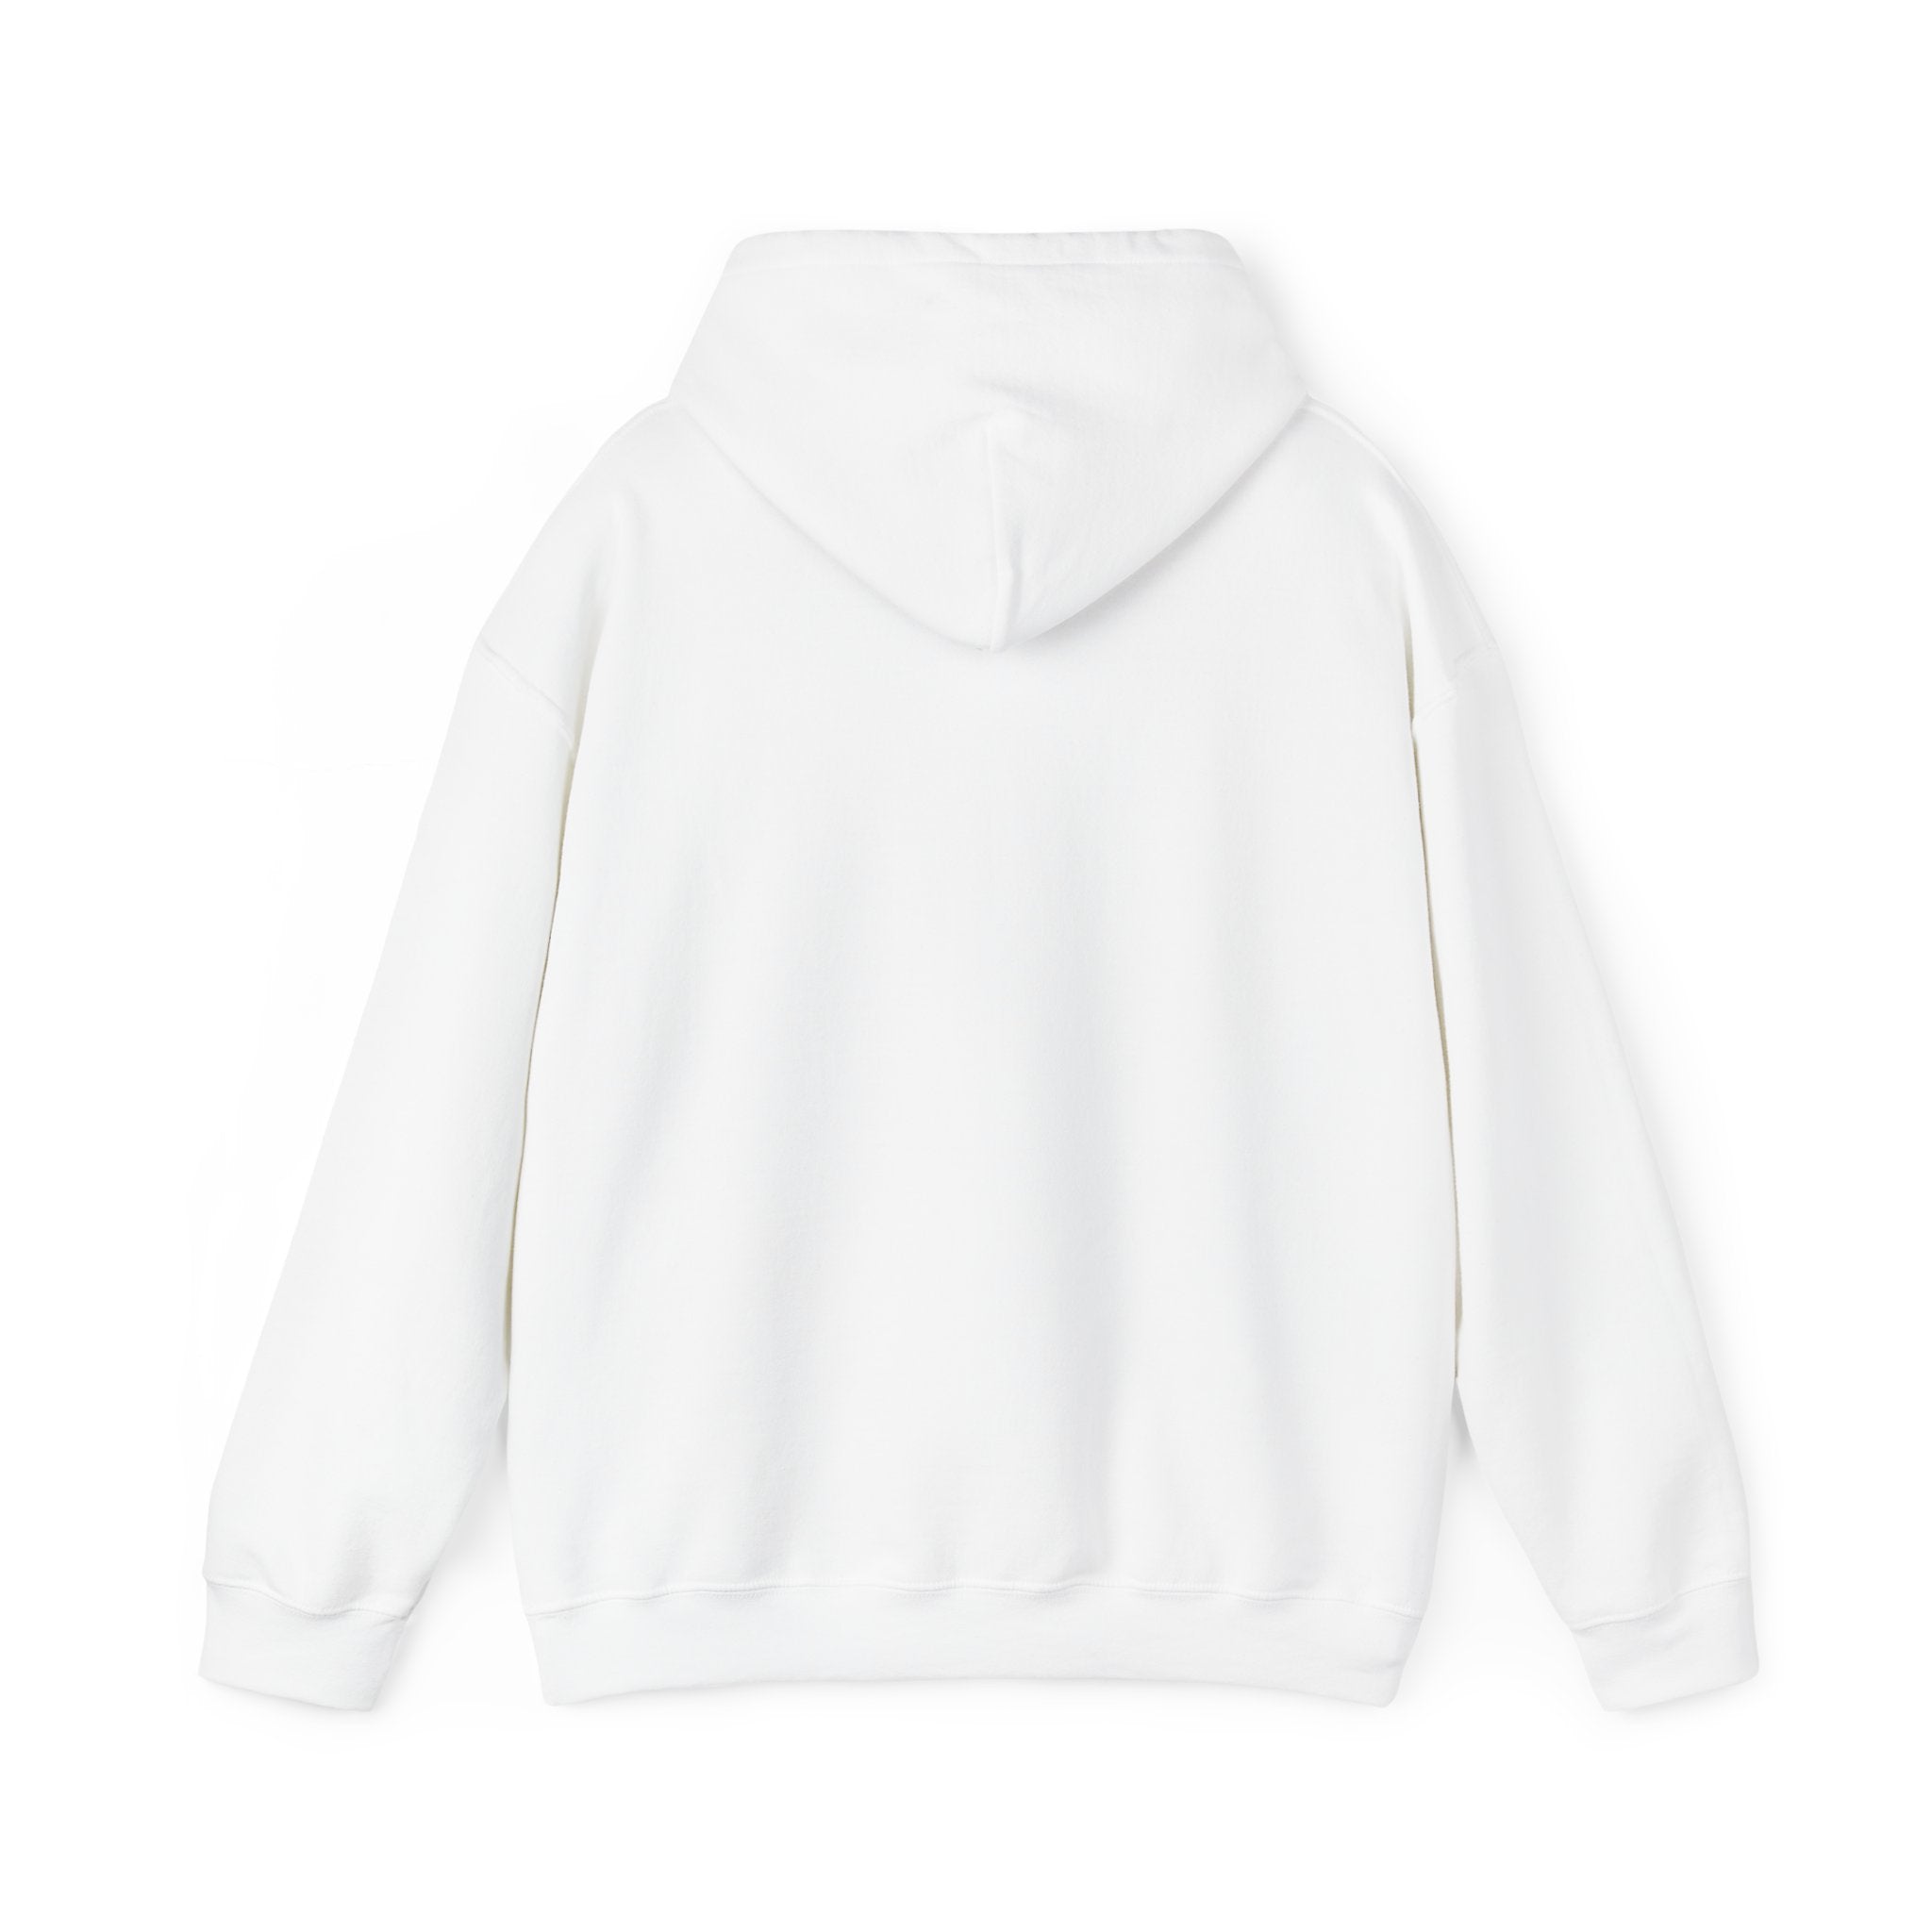 Back view of a plain white **C-Ho-Co-La-Te - Hooded Sweatshirt** with long sleeves and a fashion-forward C-Ho-Co-La-Te design.